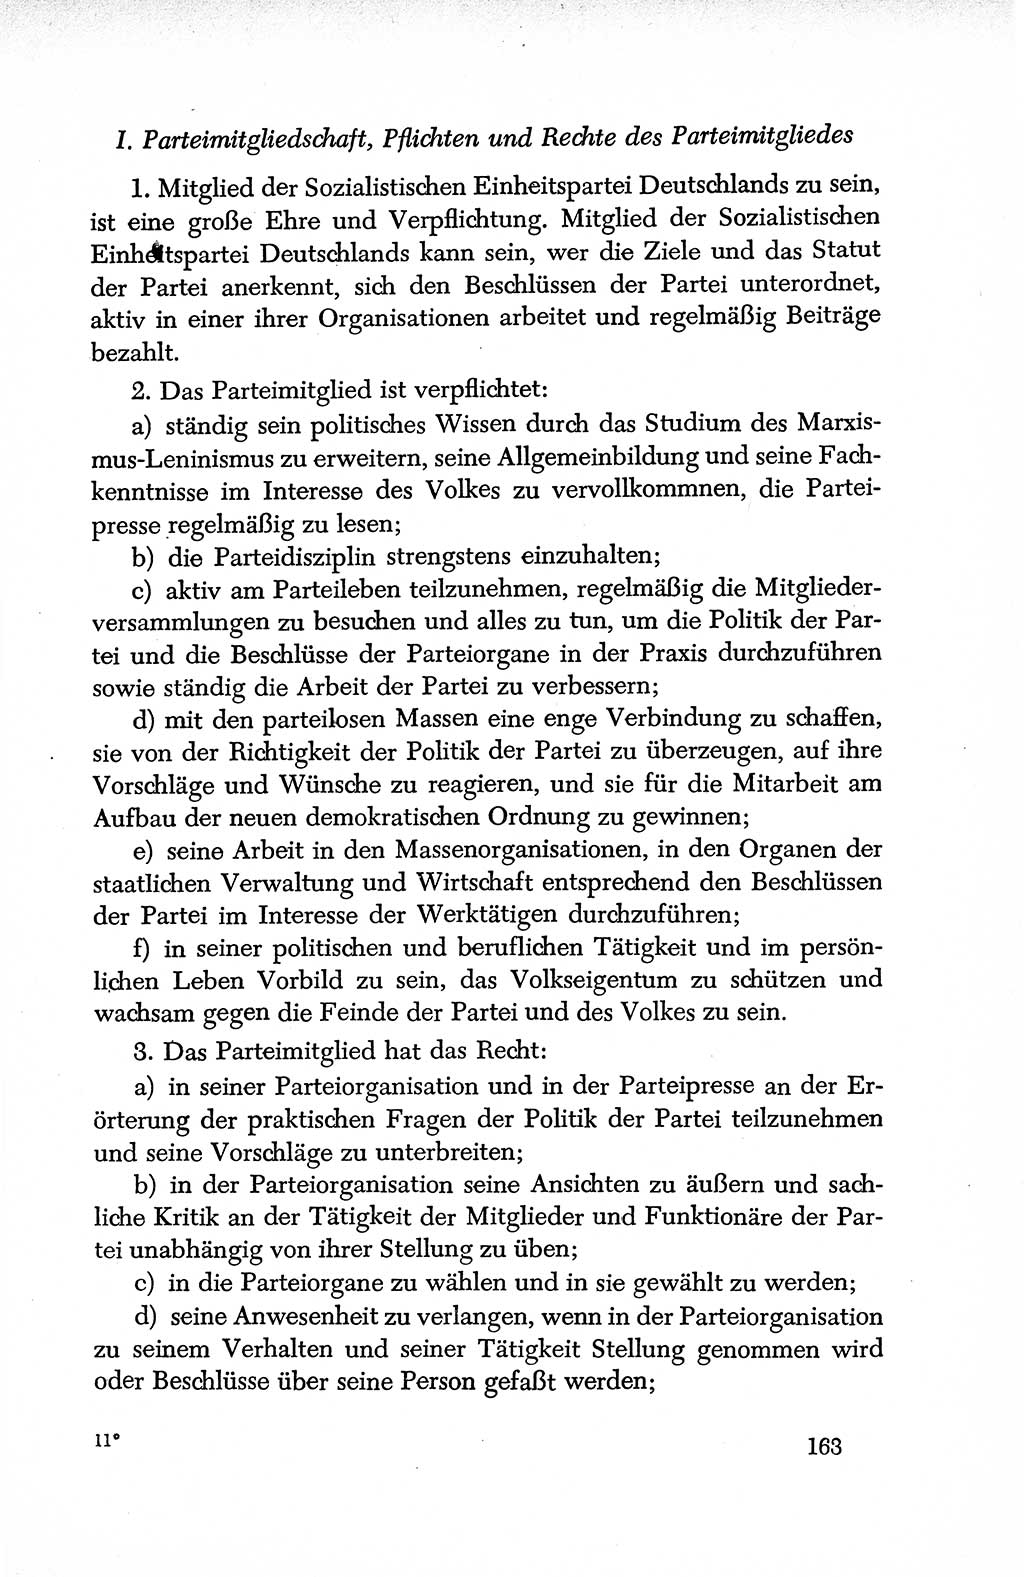 Dokumente der Sozialistischen Einheitspartei Deutschlands (SED) [Deutsche Demokratische Republik (DDR)] 1950-1952, Seite 163 (Dok. SED DDR 1950-1952, S. 163)